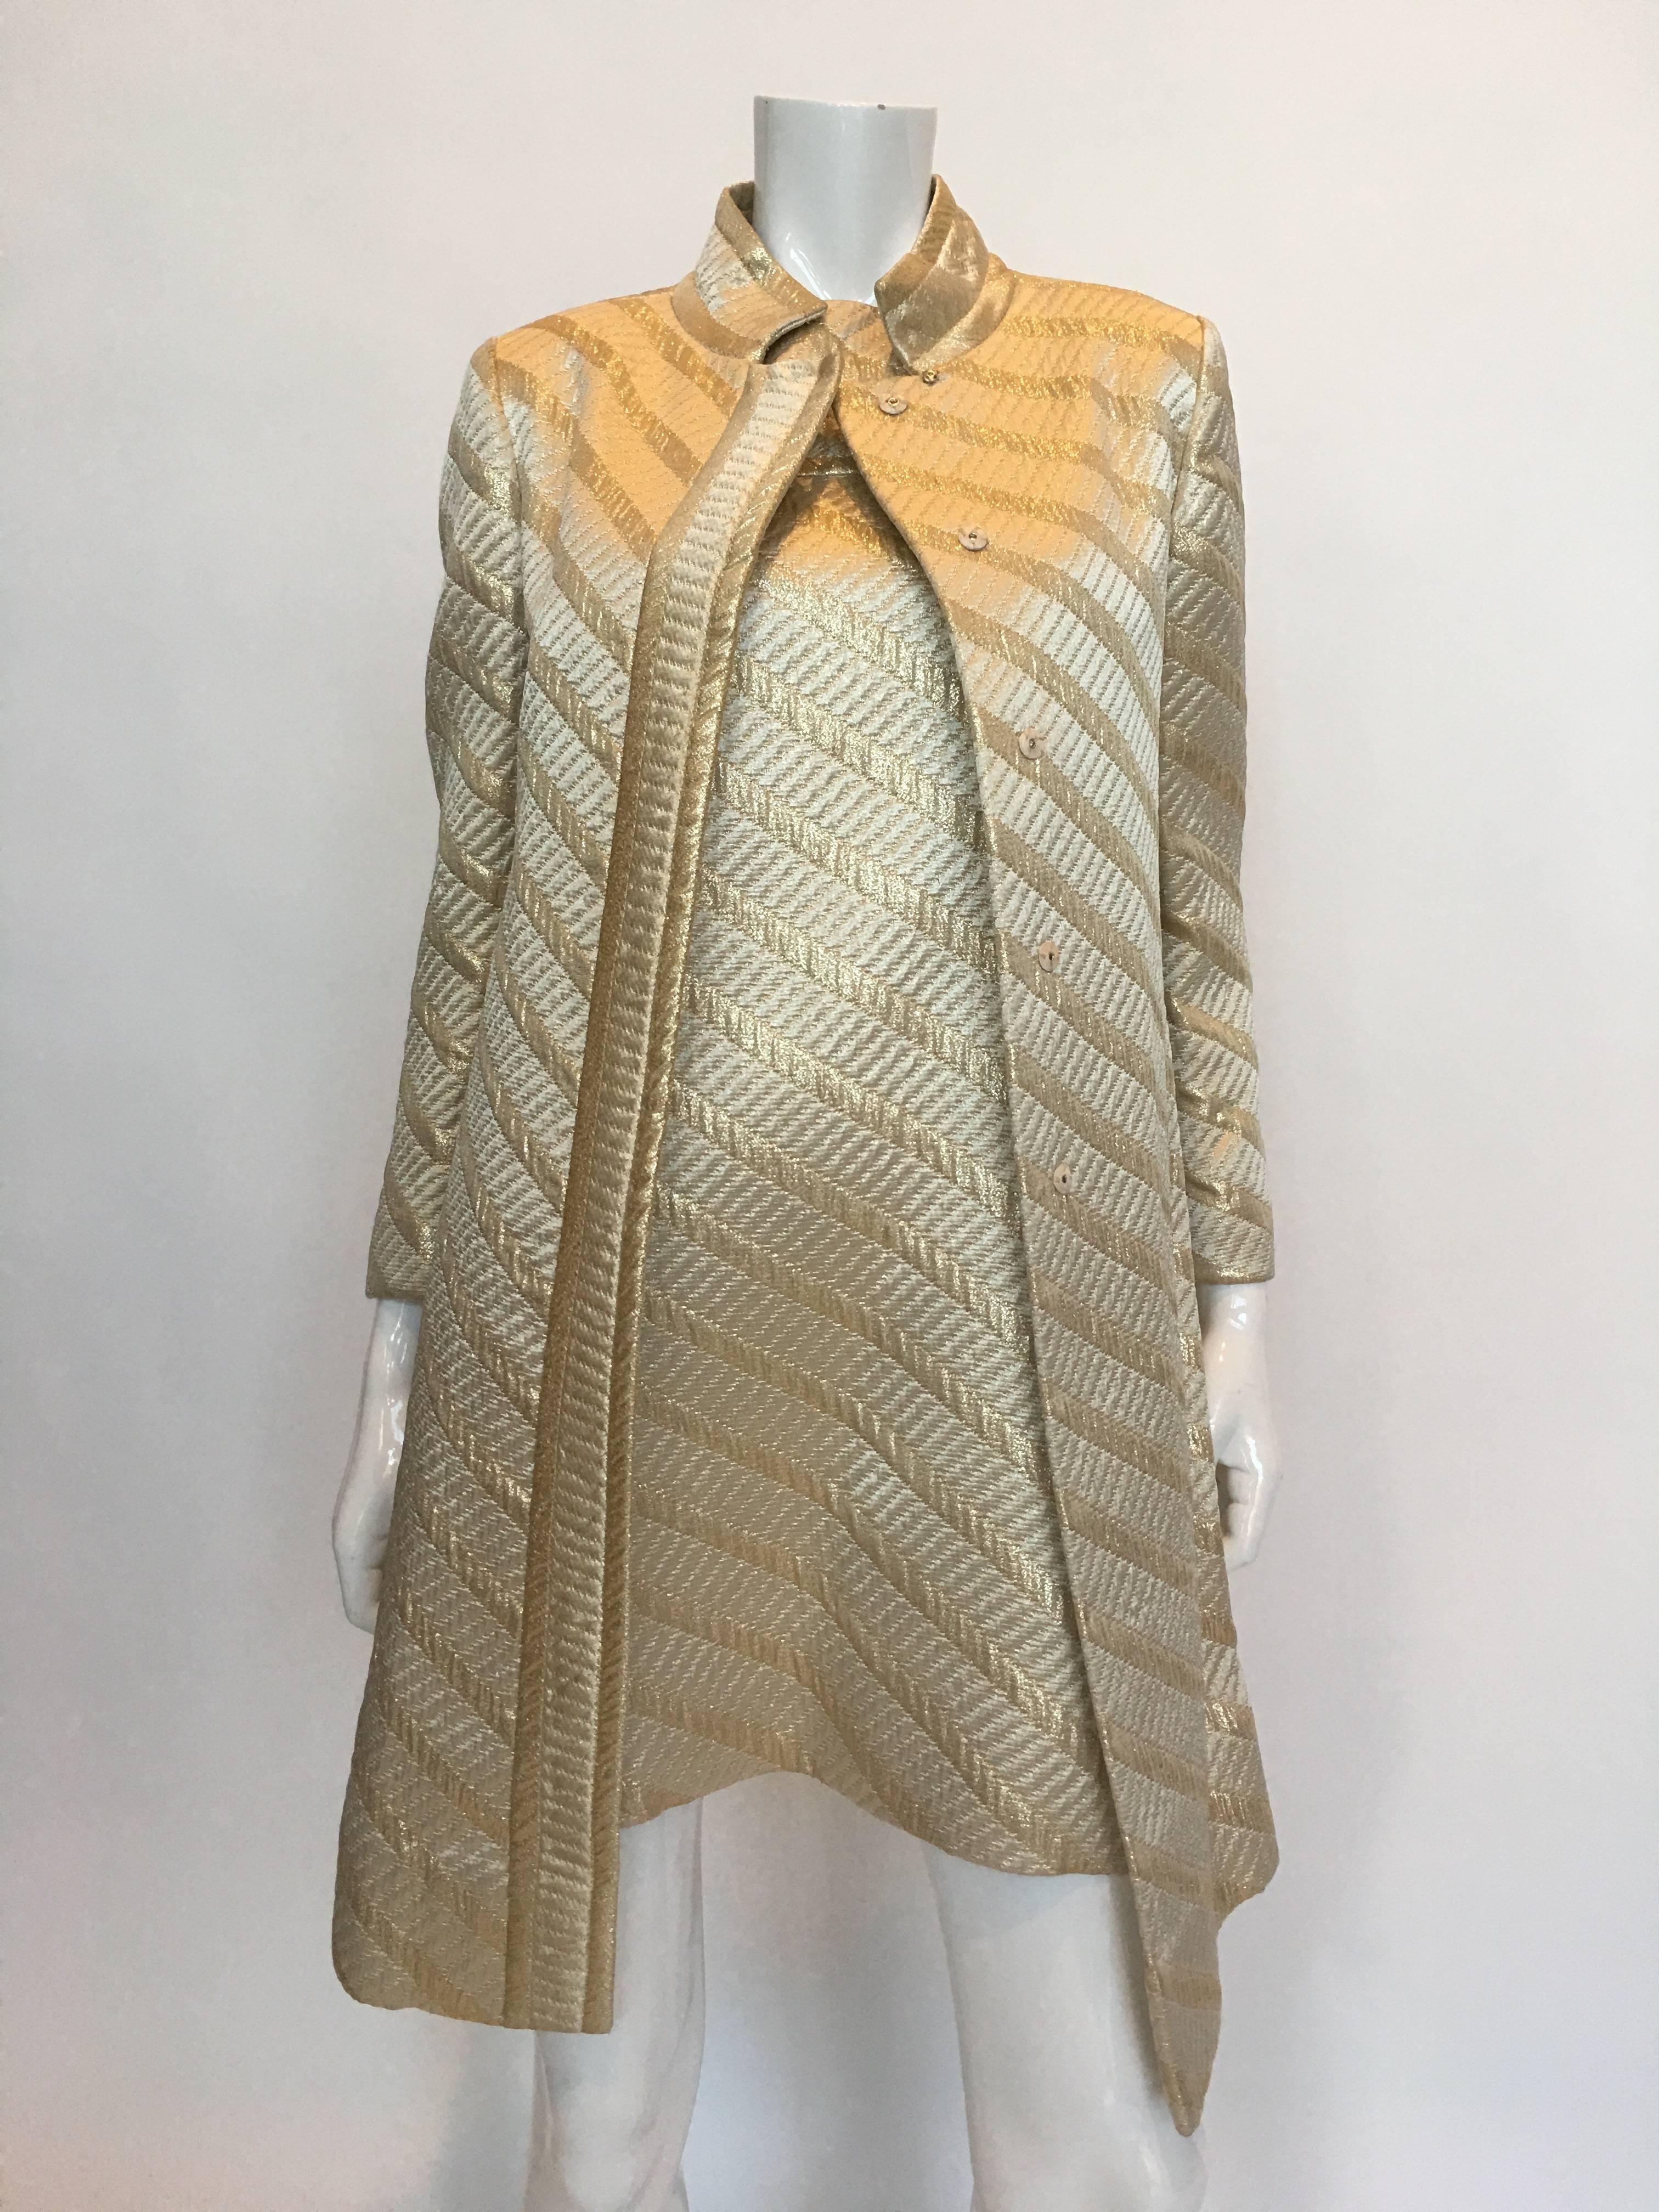 ensemble 2 pièces des années 1960 - Manteau et robe assortis style Gucci - Jackie O - Moderne et doré 
Fabriqué aux États-Unis - Label de l'Union 

L'étiquette de taille lit :  Manteau 9     
                                 Robe 10
Selon les